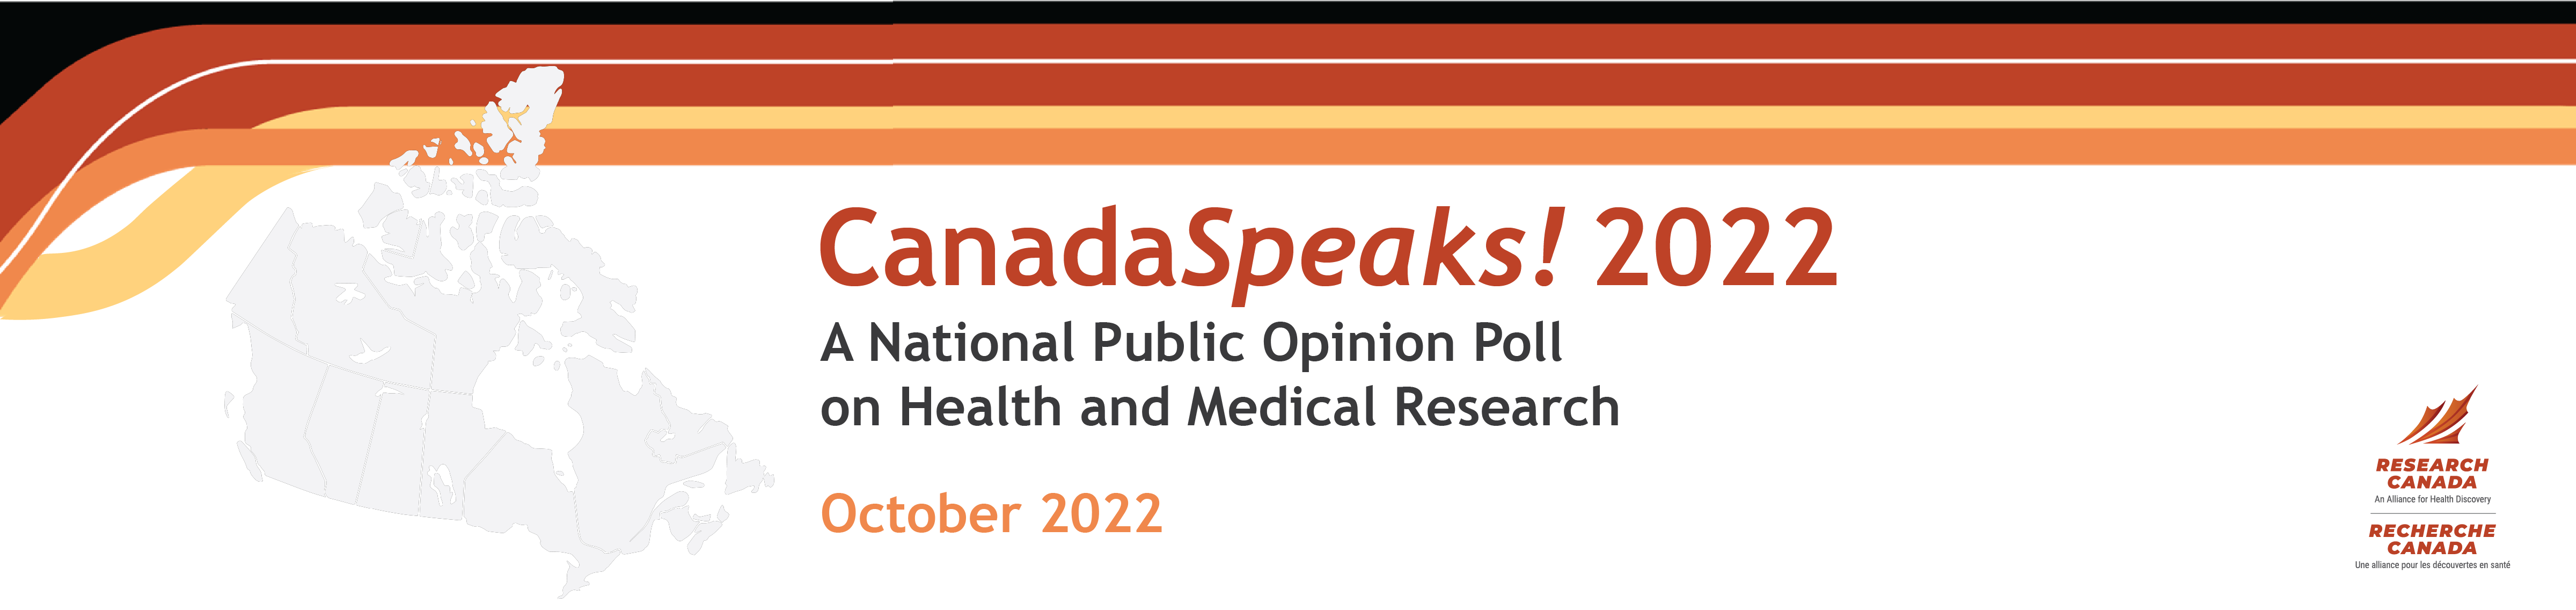 CanadaSpeaks 2022_WebBanner_EN